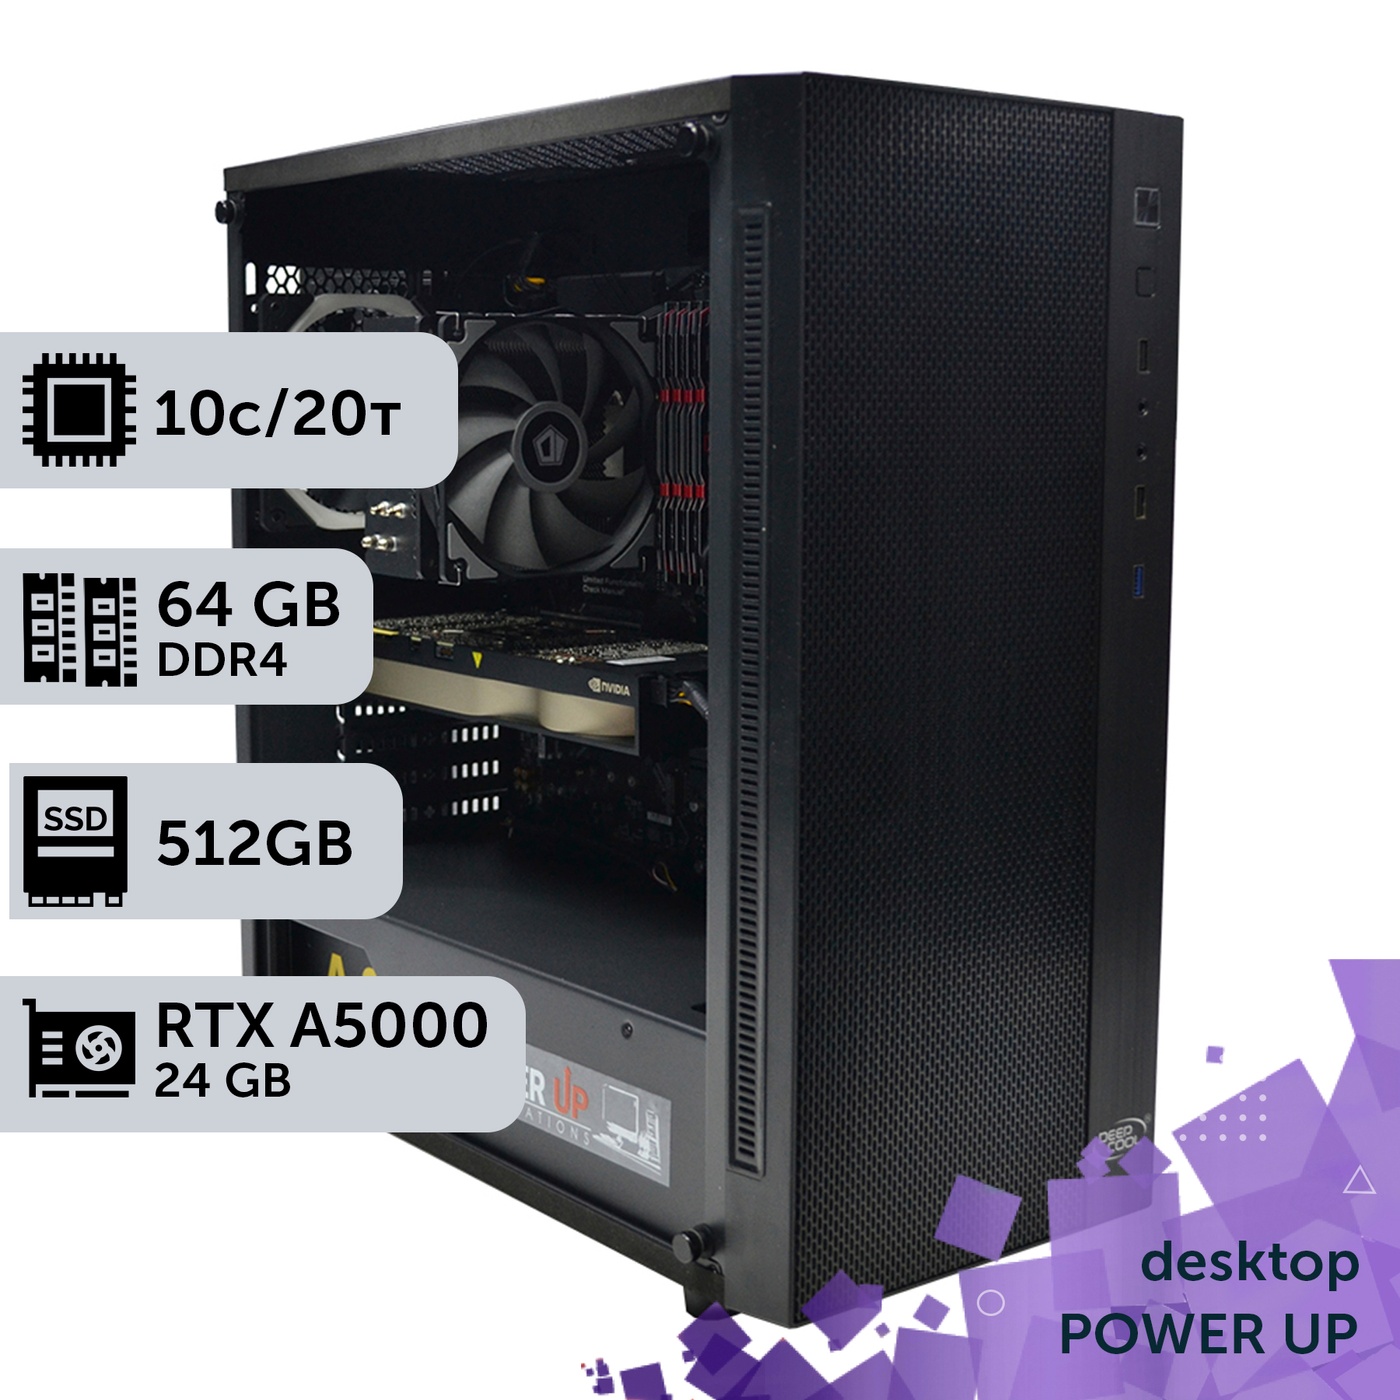 Робоча станція PowerUp Desktop #81 Ryzen 9 5900x/64 GB/HDD 2 TB/SSD 512GB/NVIDIA Quadro RTX A5000 24GB